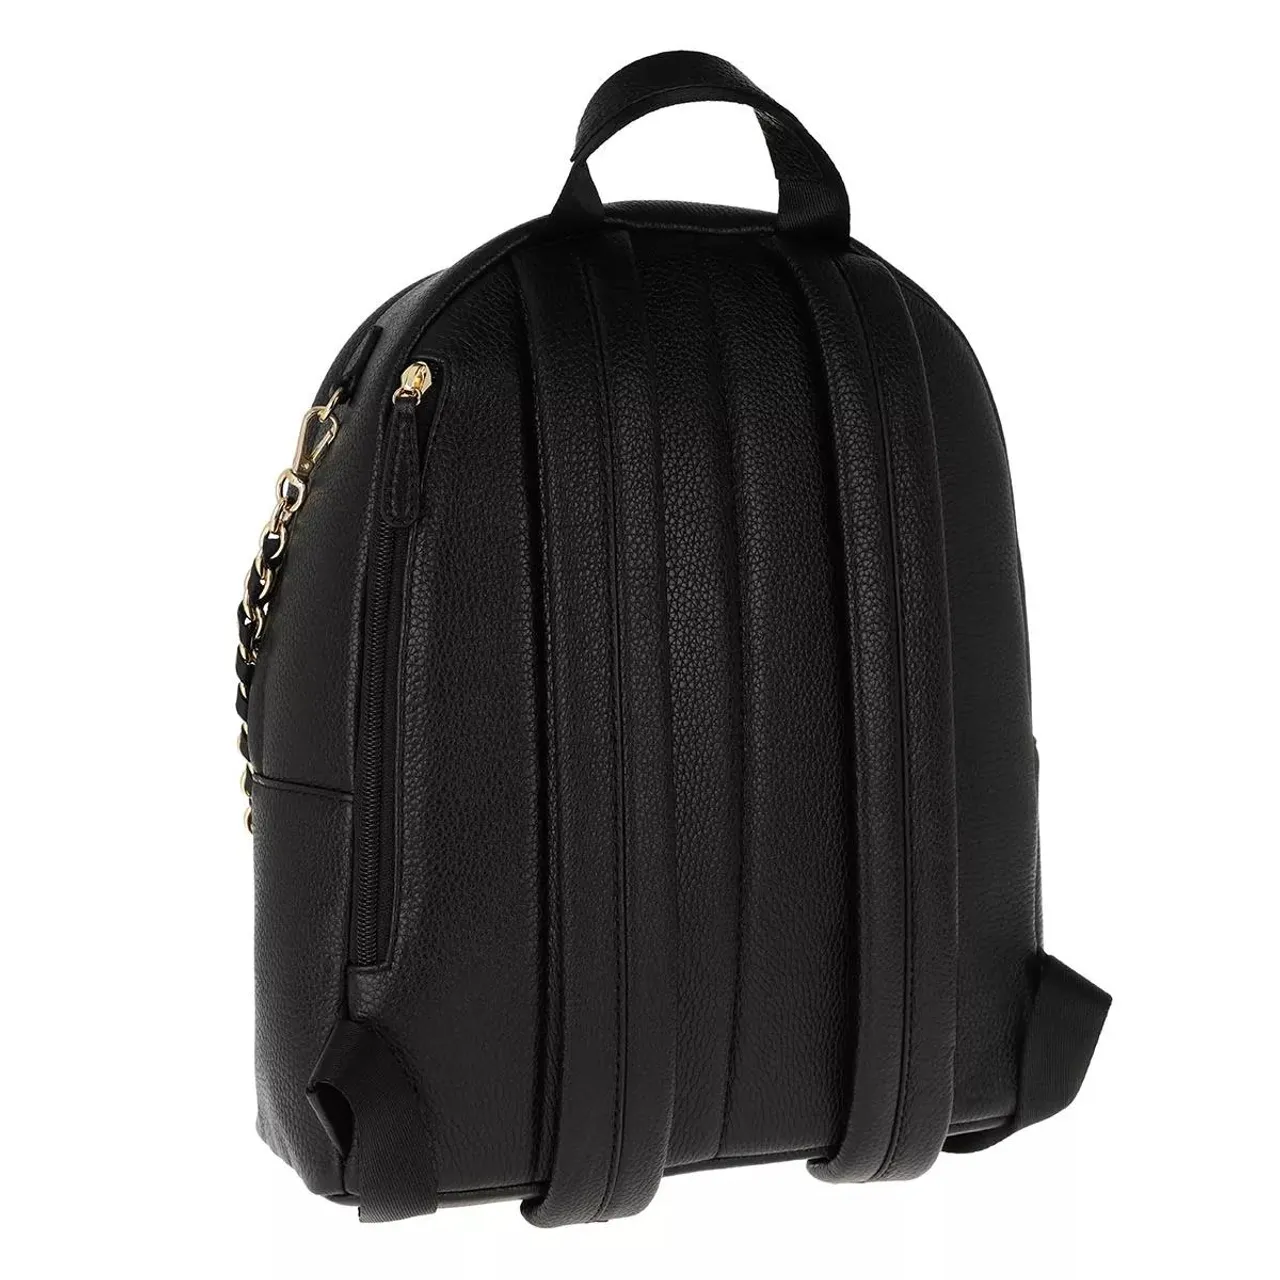 Michael Kors Backpacks - Slater Medium Backpack - black - Backpacks for ladies